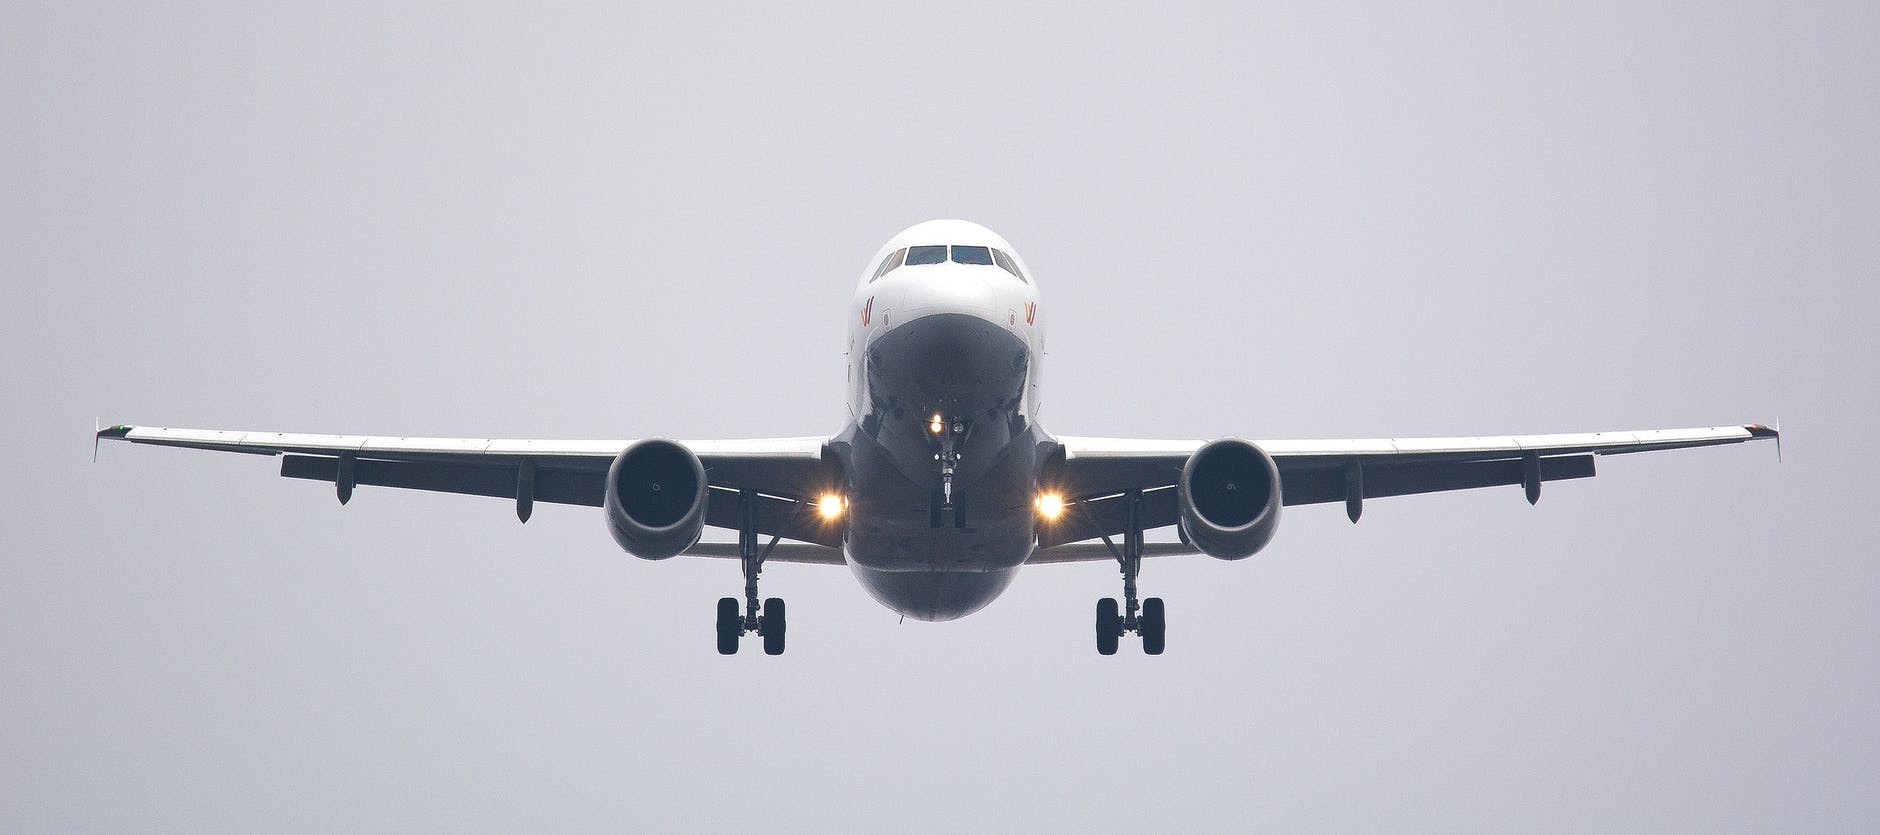 94 personas regresan al país en segundo vuelo proveniente de Houston, Texas